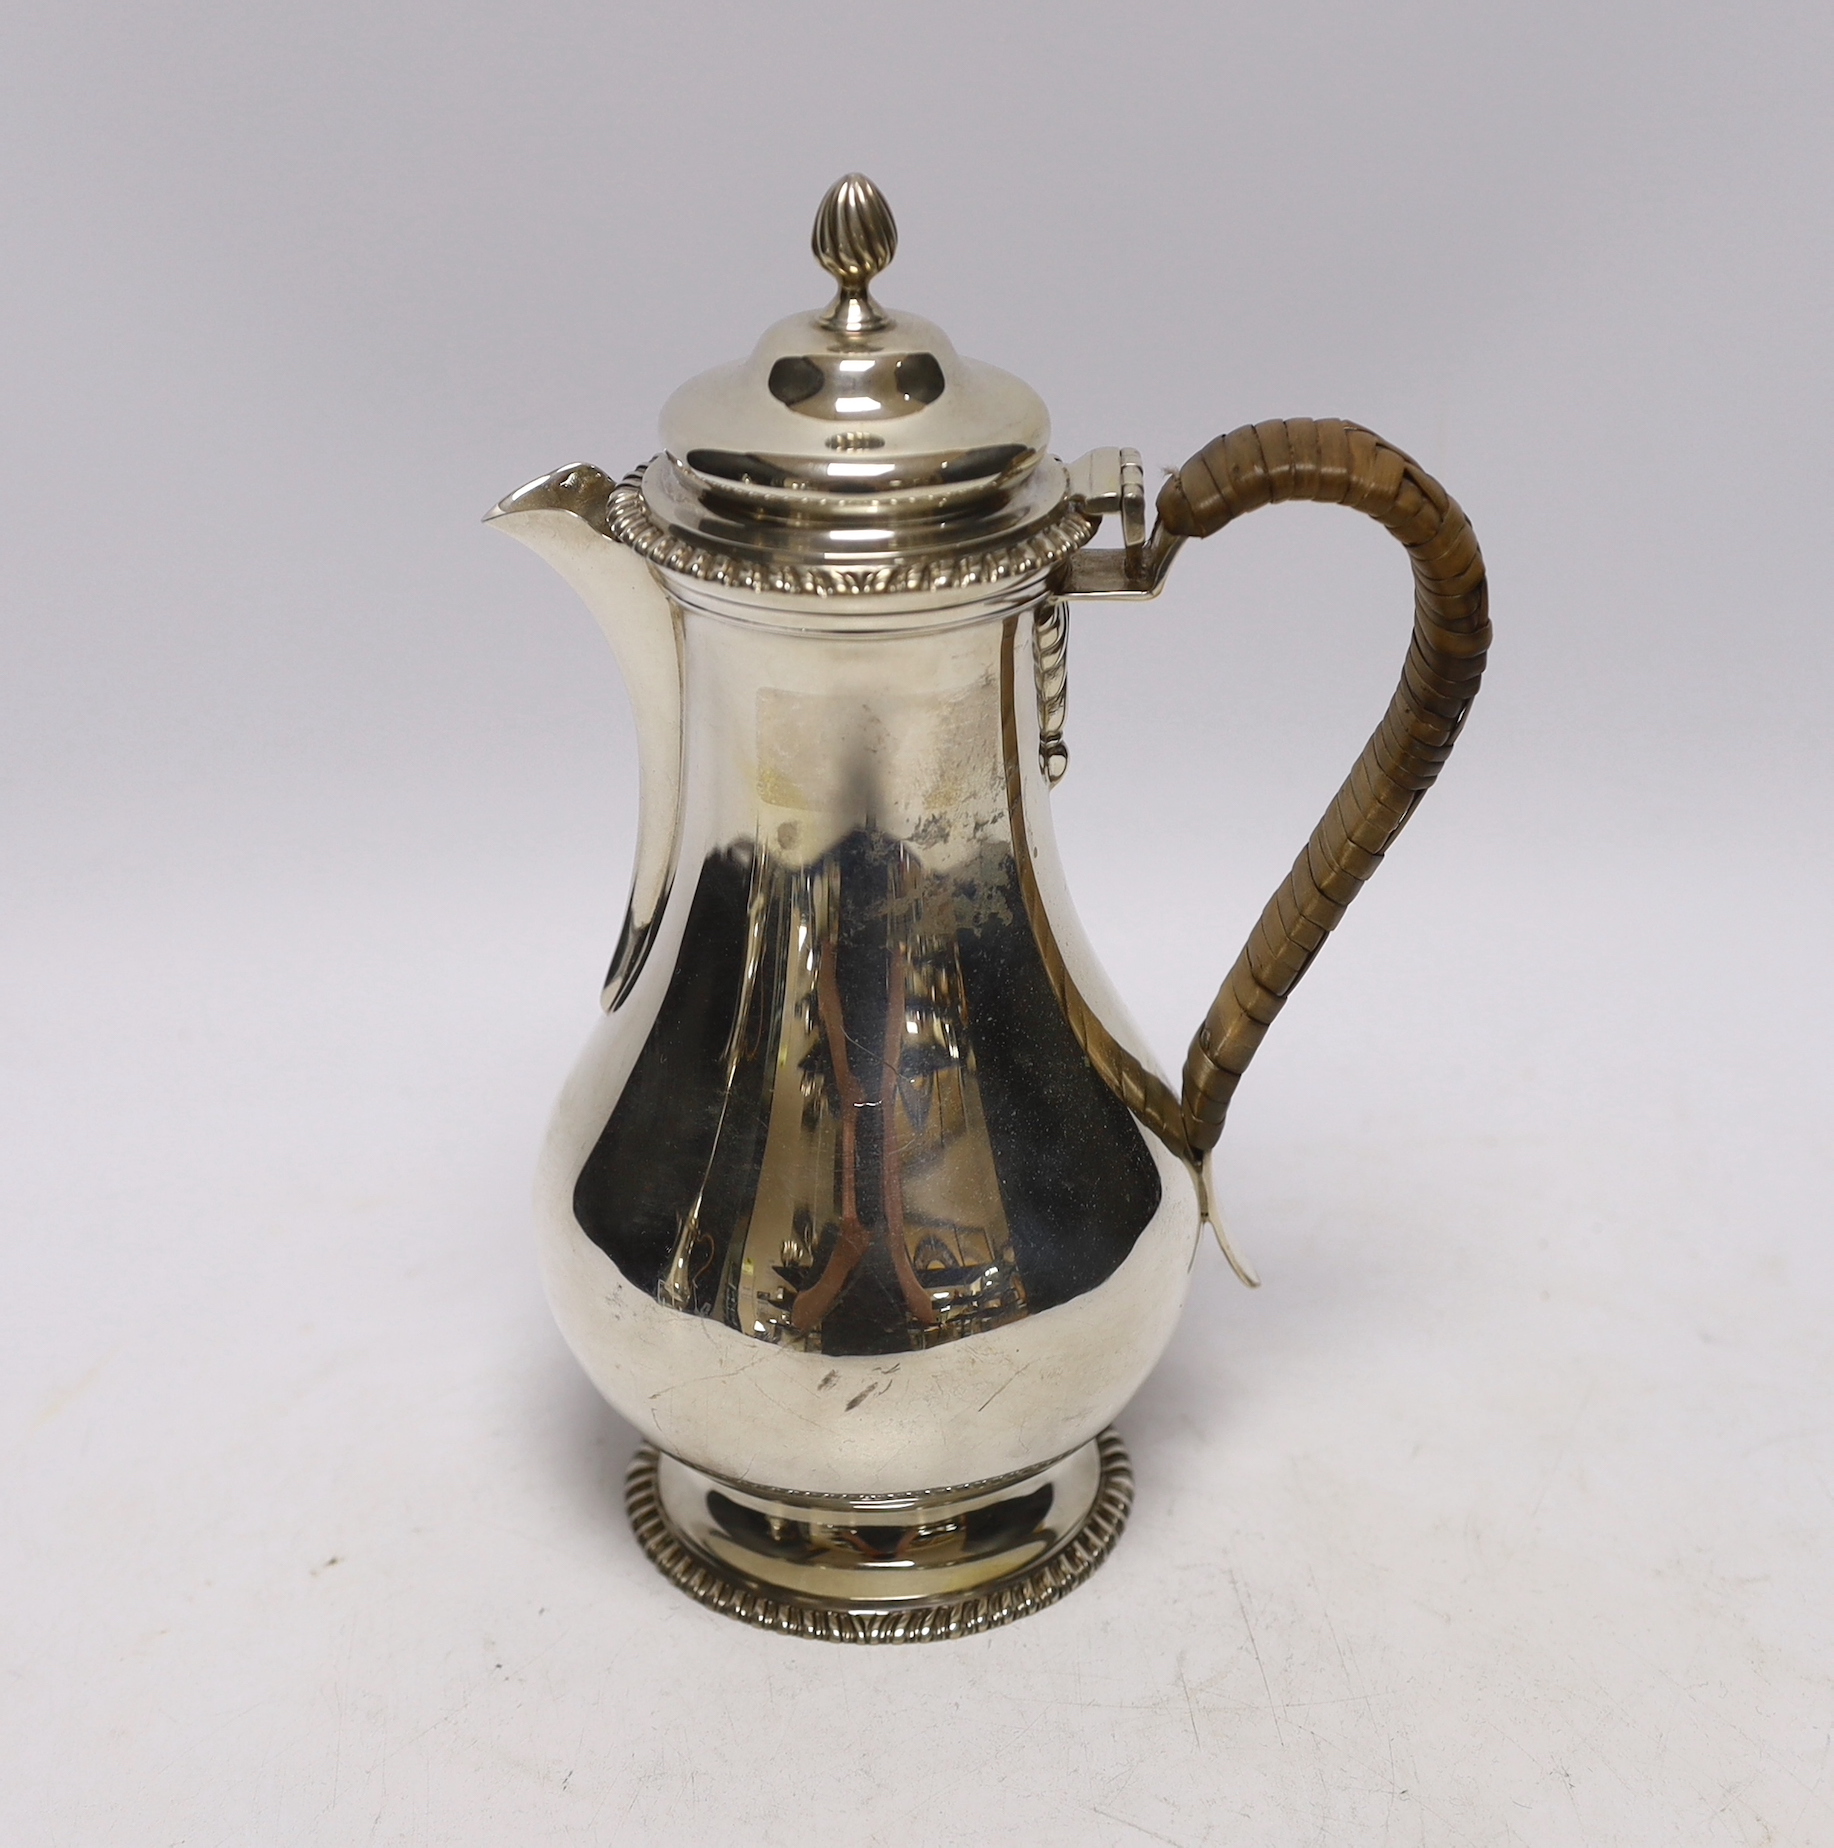 An Edwardian silver baluster hot water pot, London, 1905, height 21cm, gross weight 14.7oz.                                                                                                                                 